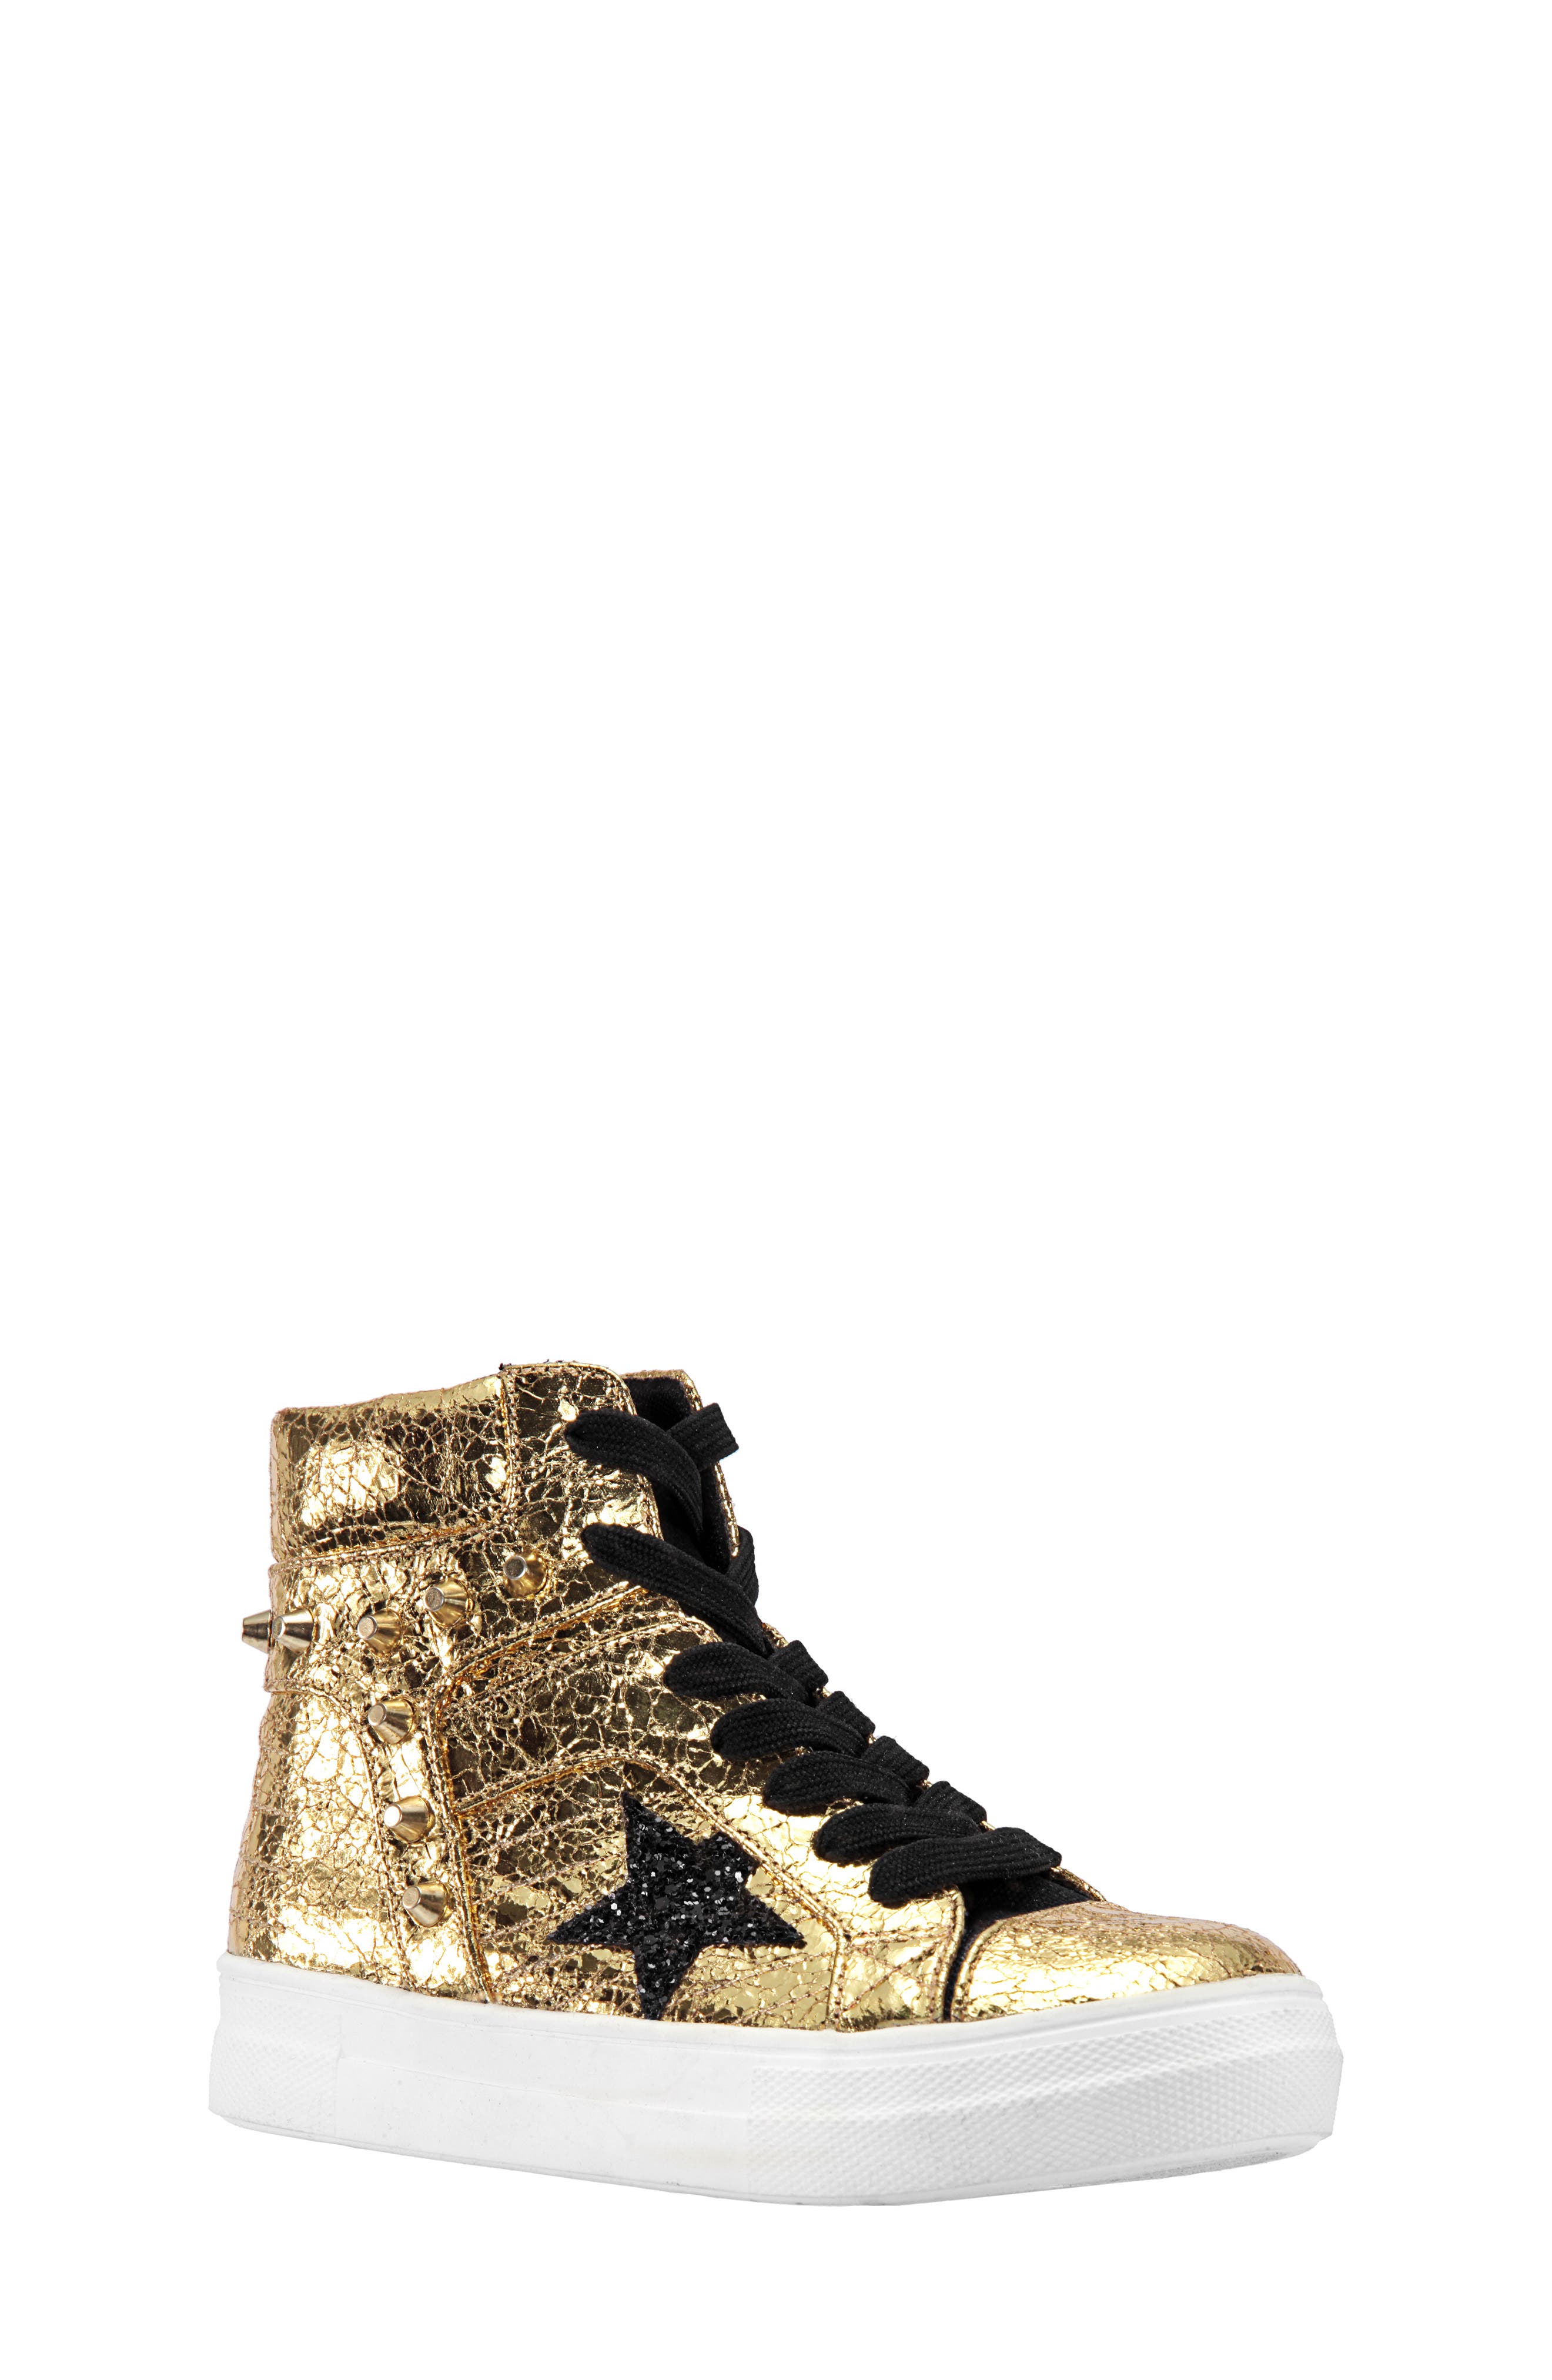 UPC 794378359111 product image for Girl's Nina Ima Studded High Top Sneaker, Size 1 M - Metallic | upcitemdb.com